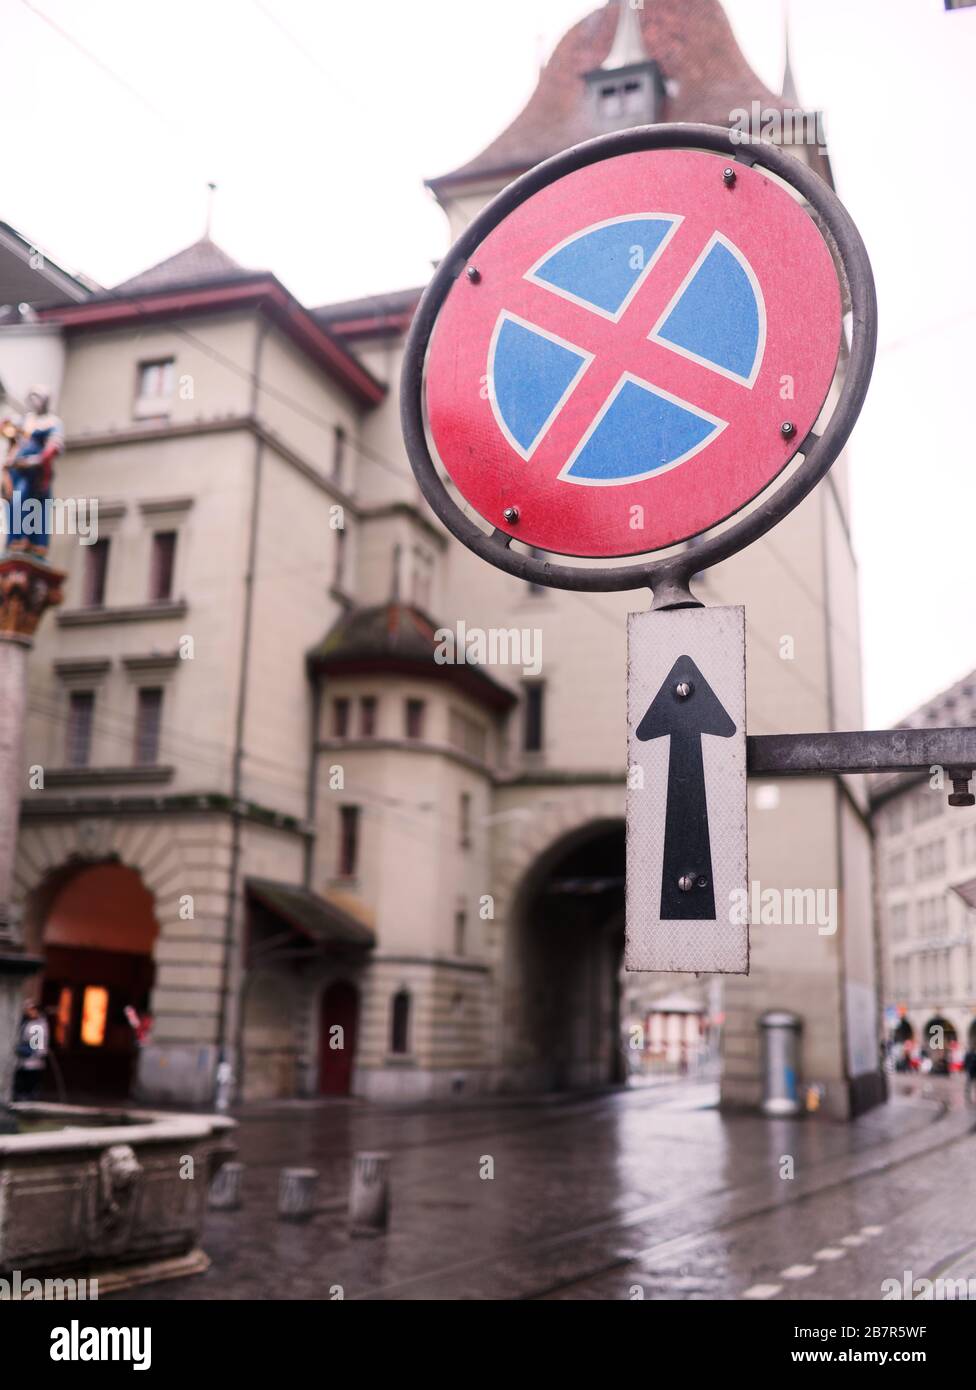 Kein Halt- und Parkschild an der Marktgasse in der Altstadt von Bern,  Schweiz Stockfotografie - Alamy